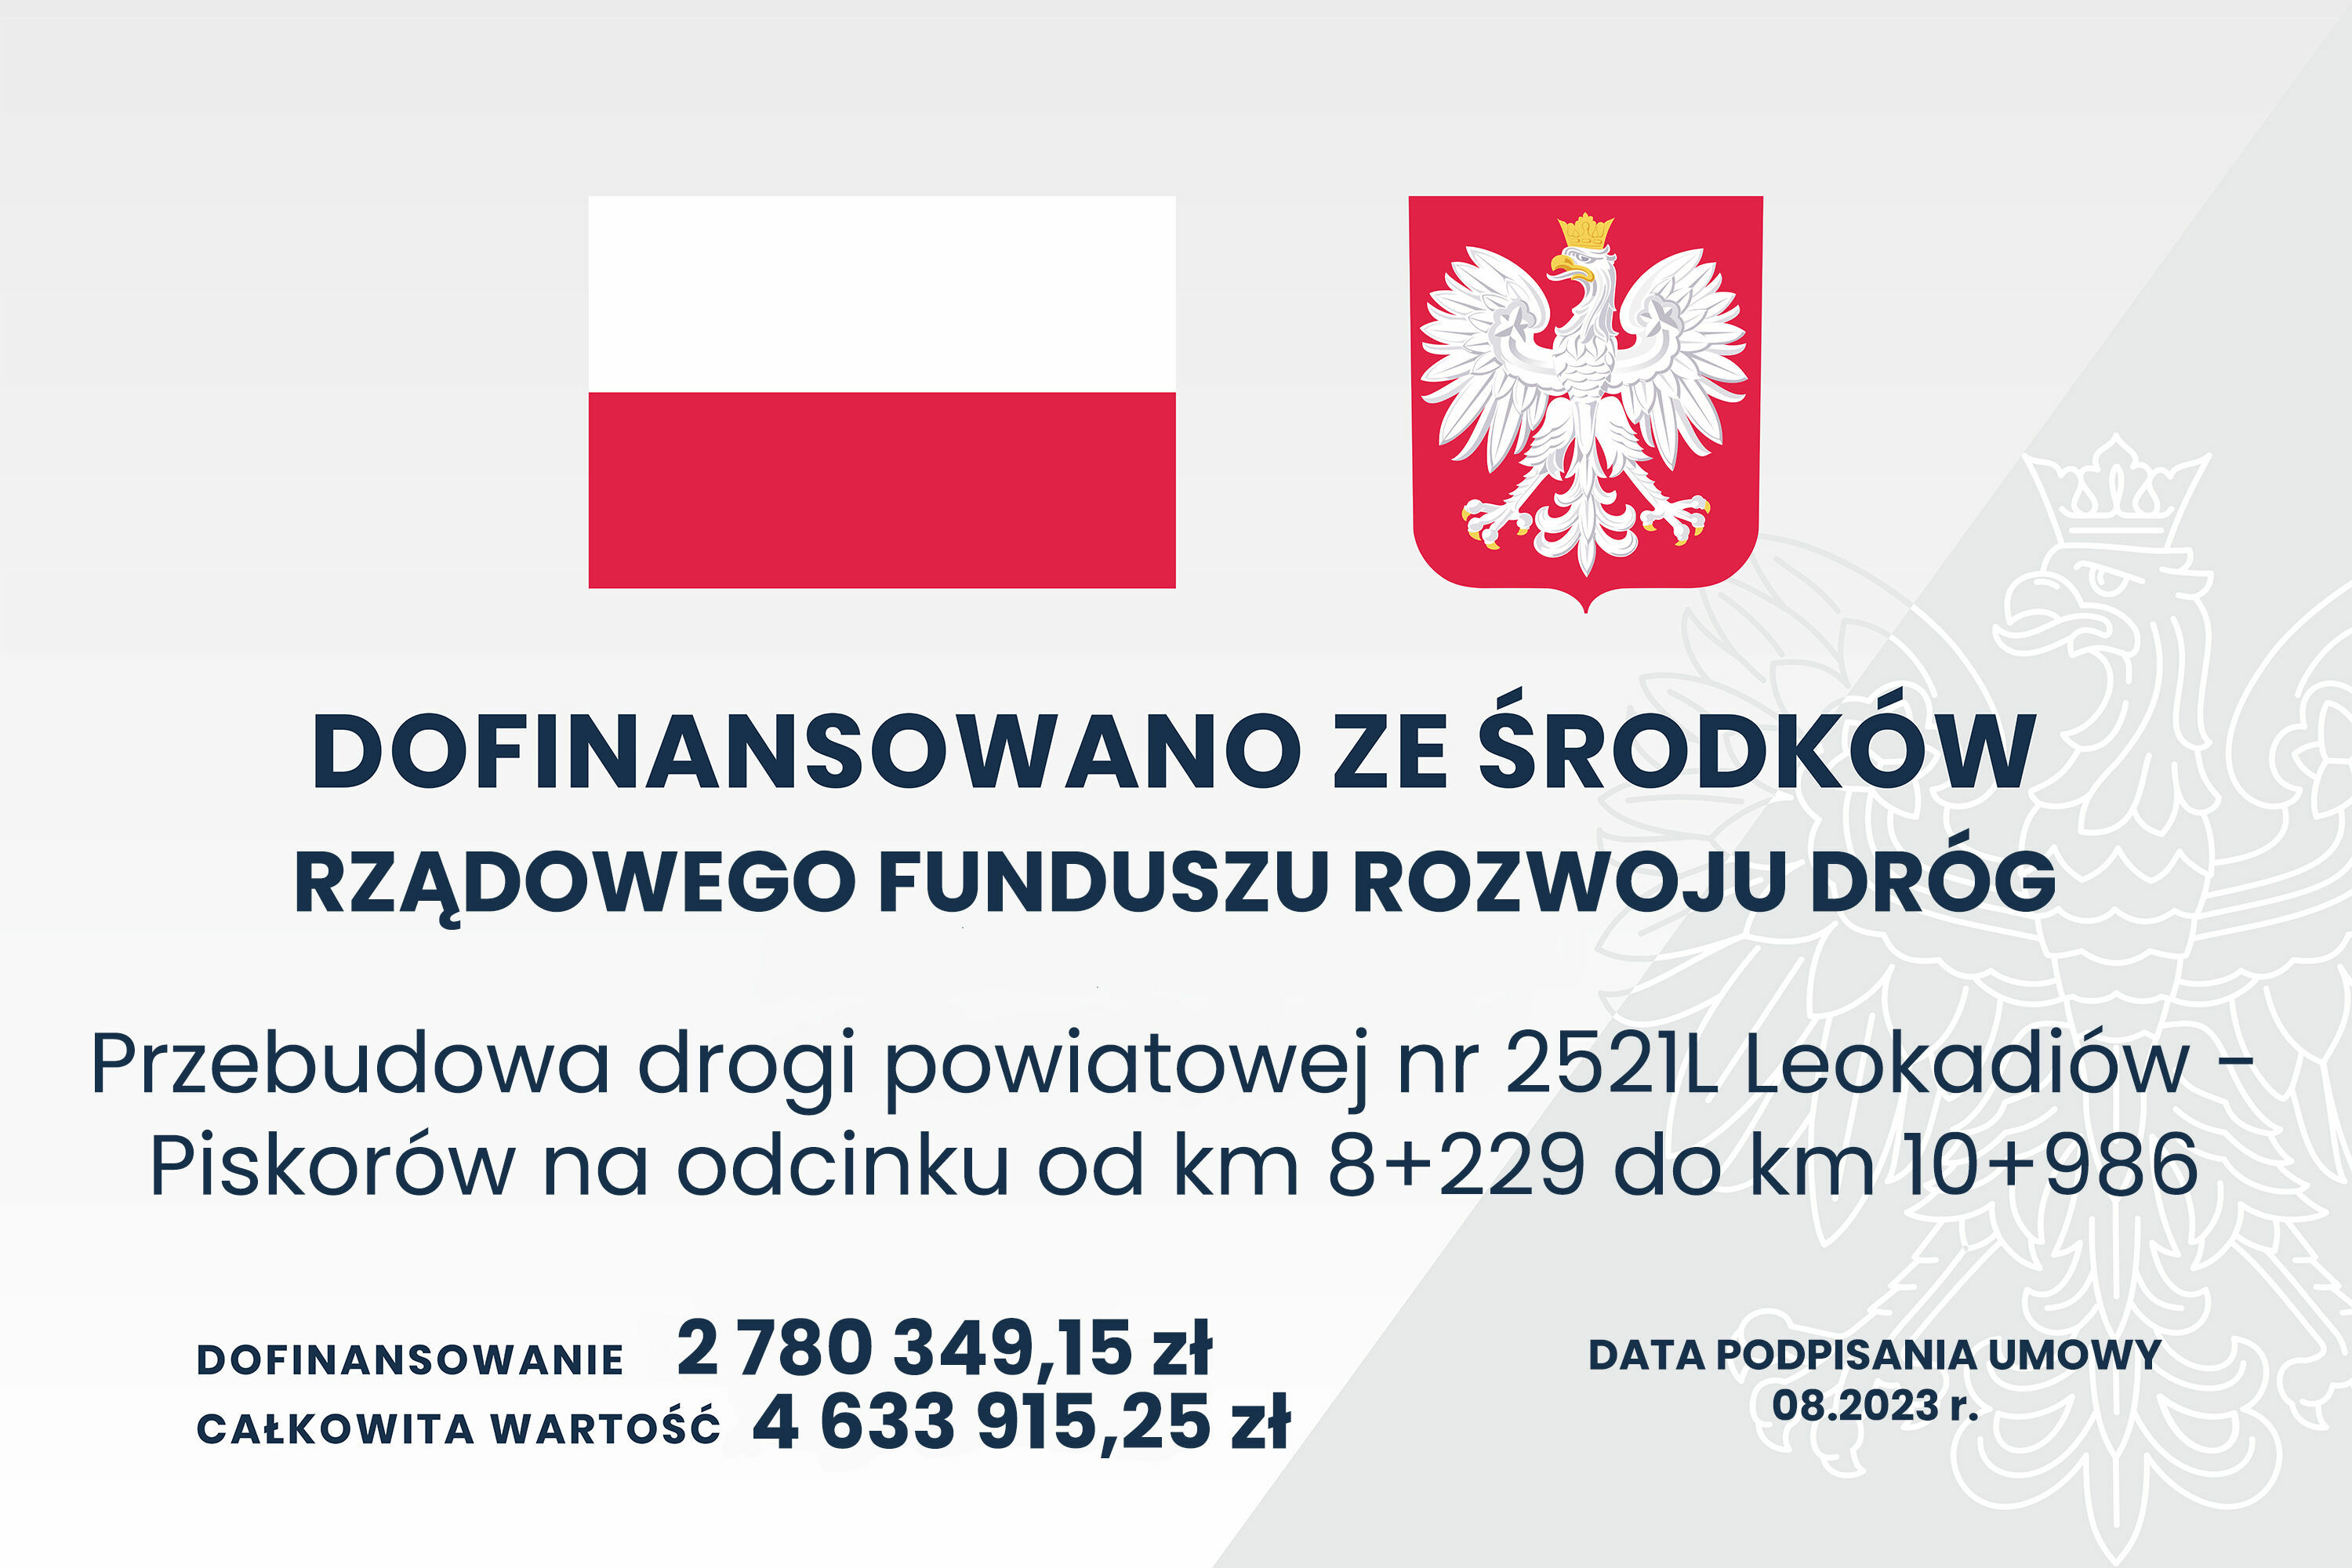 Plakat informacyjny z polskimi symbolami narodowymi, informujący o dofinansowaniu przebudowy drogi z funduszu rządowego.